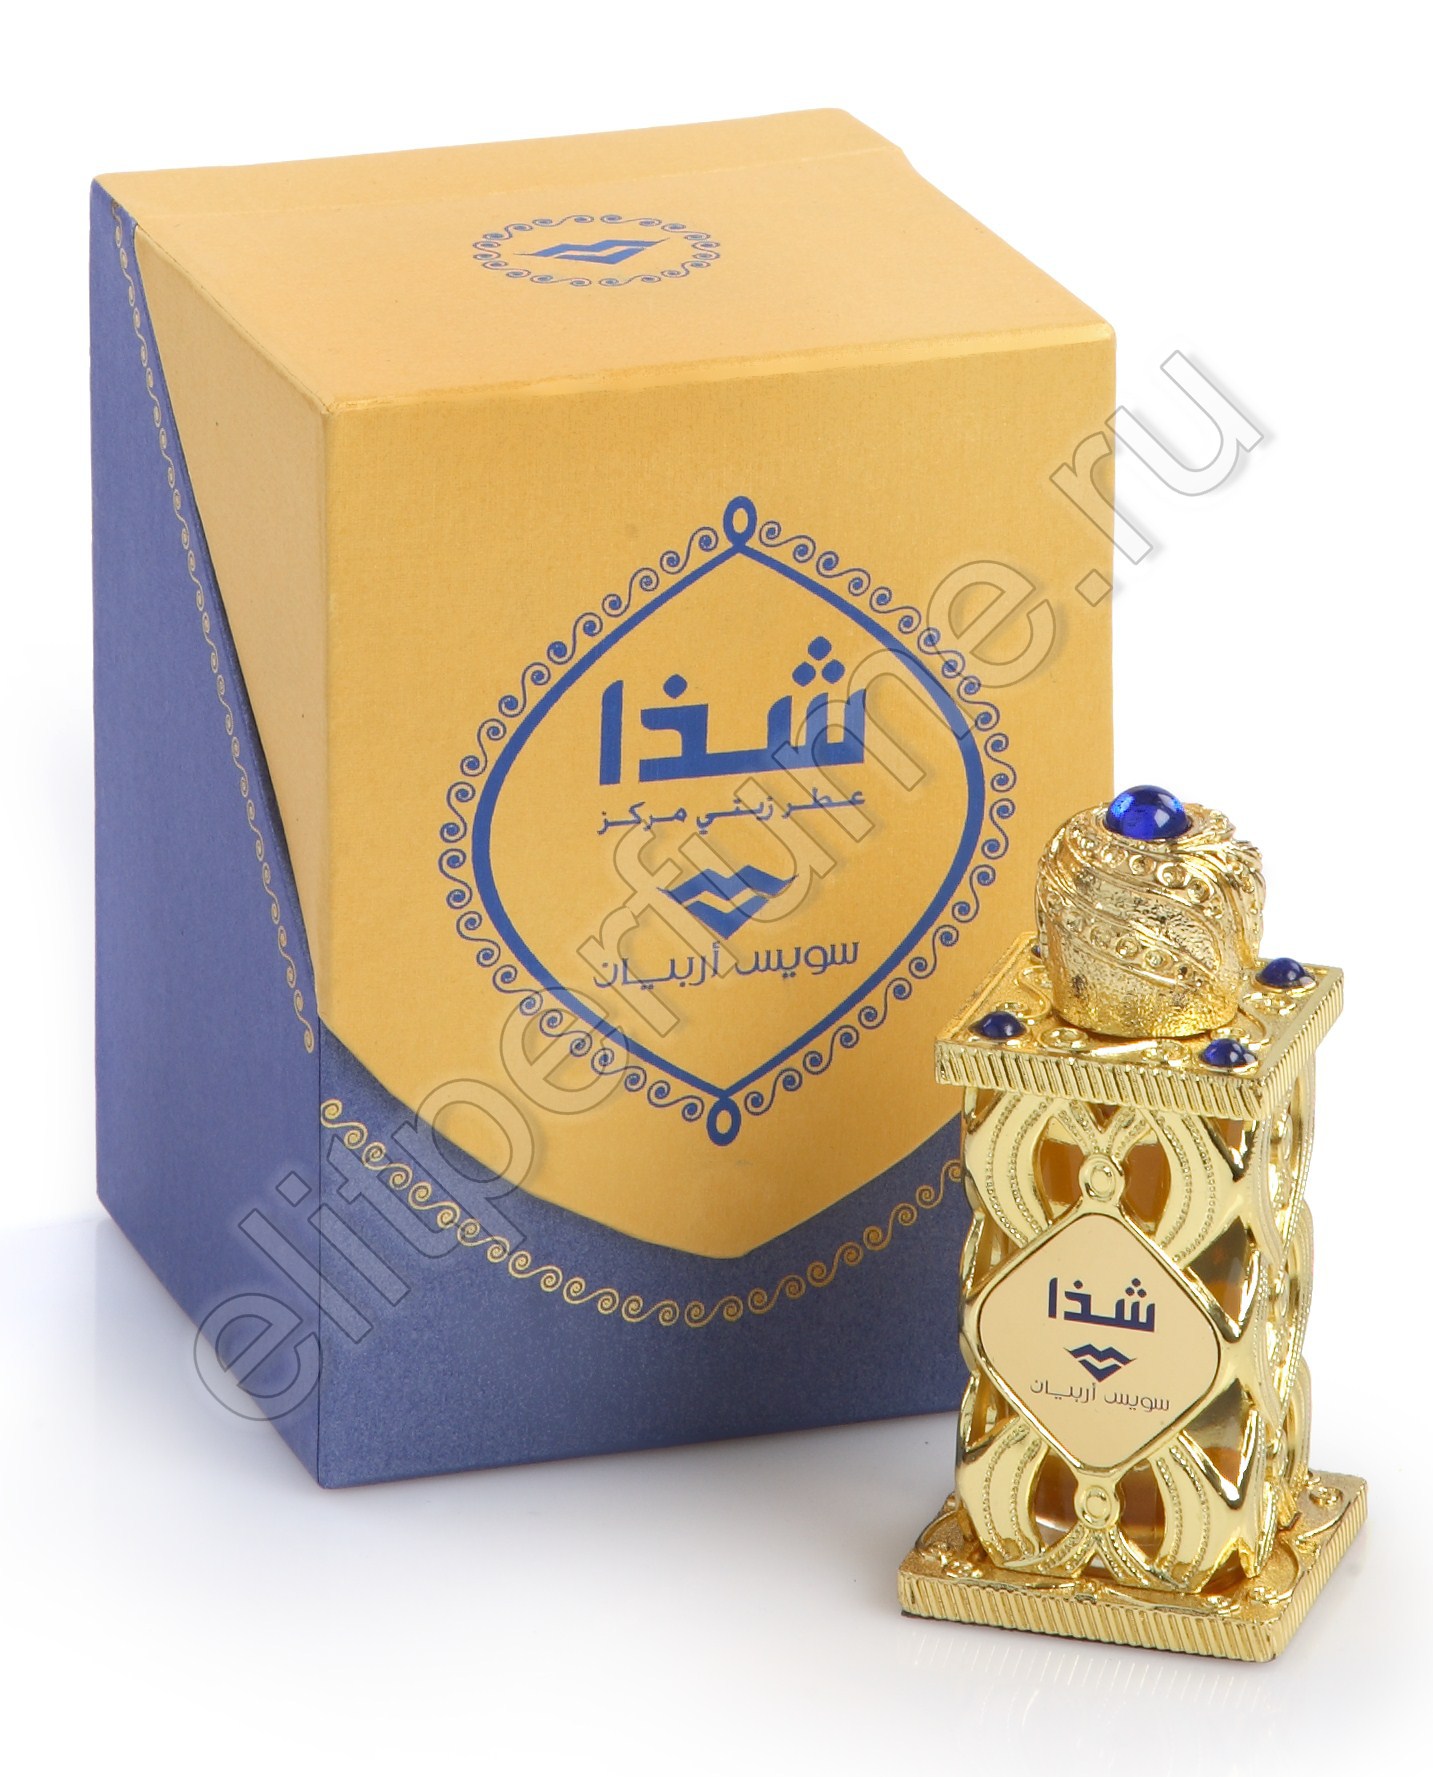 Пробники для арабских духов Шадда Shadha 1 мл арабские масляные духи от Свисс Арабиан Swiss Arabian